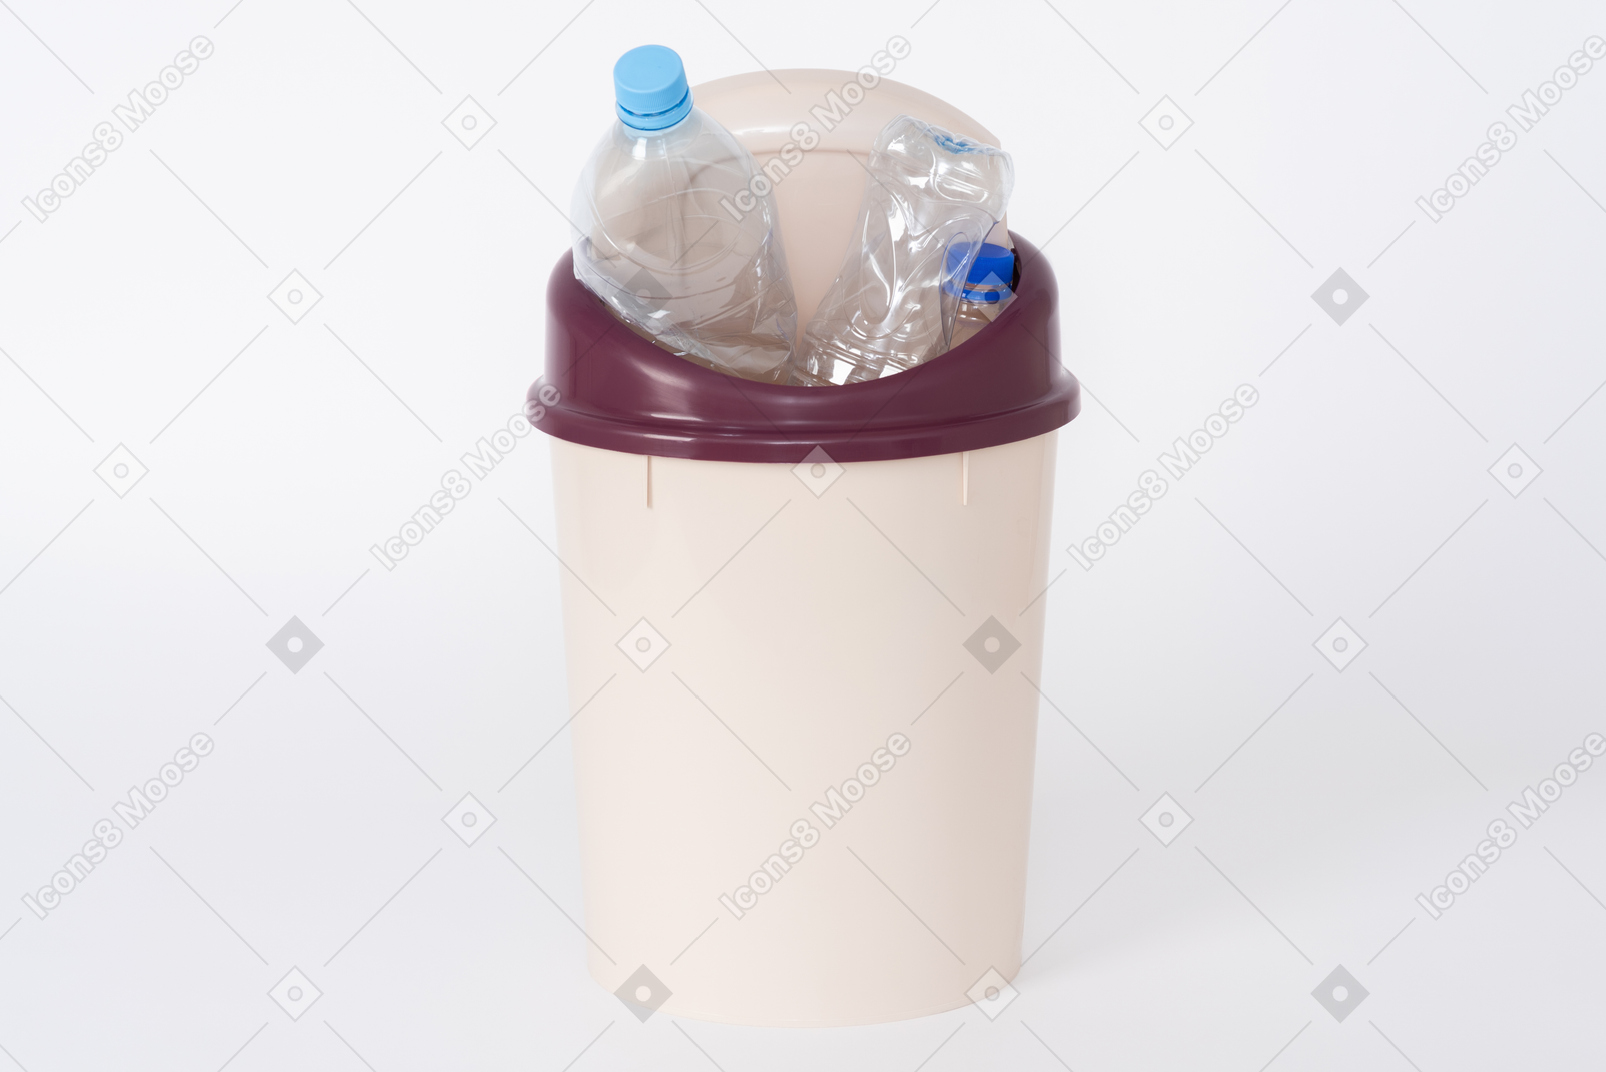 Brown plastic trash bin full of plastic bottles